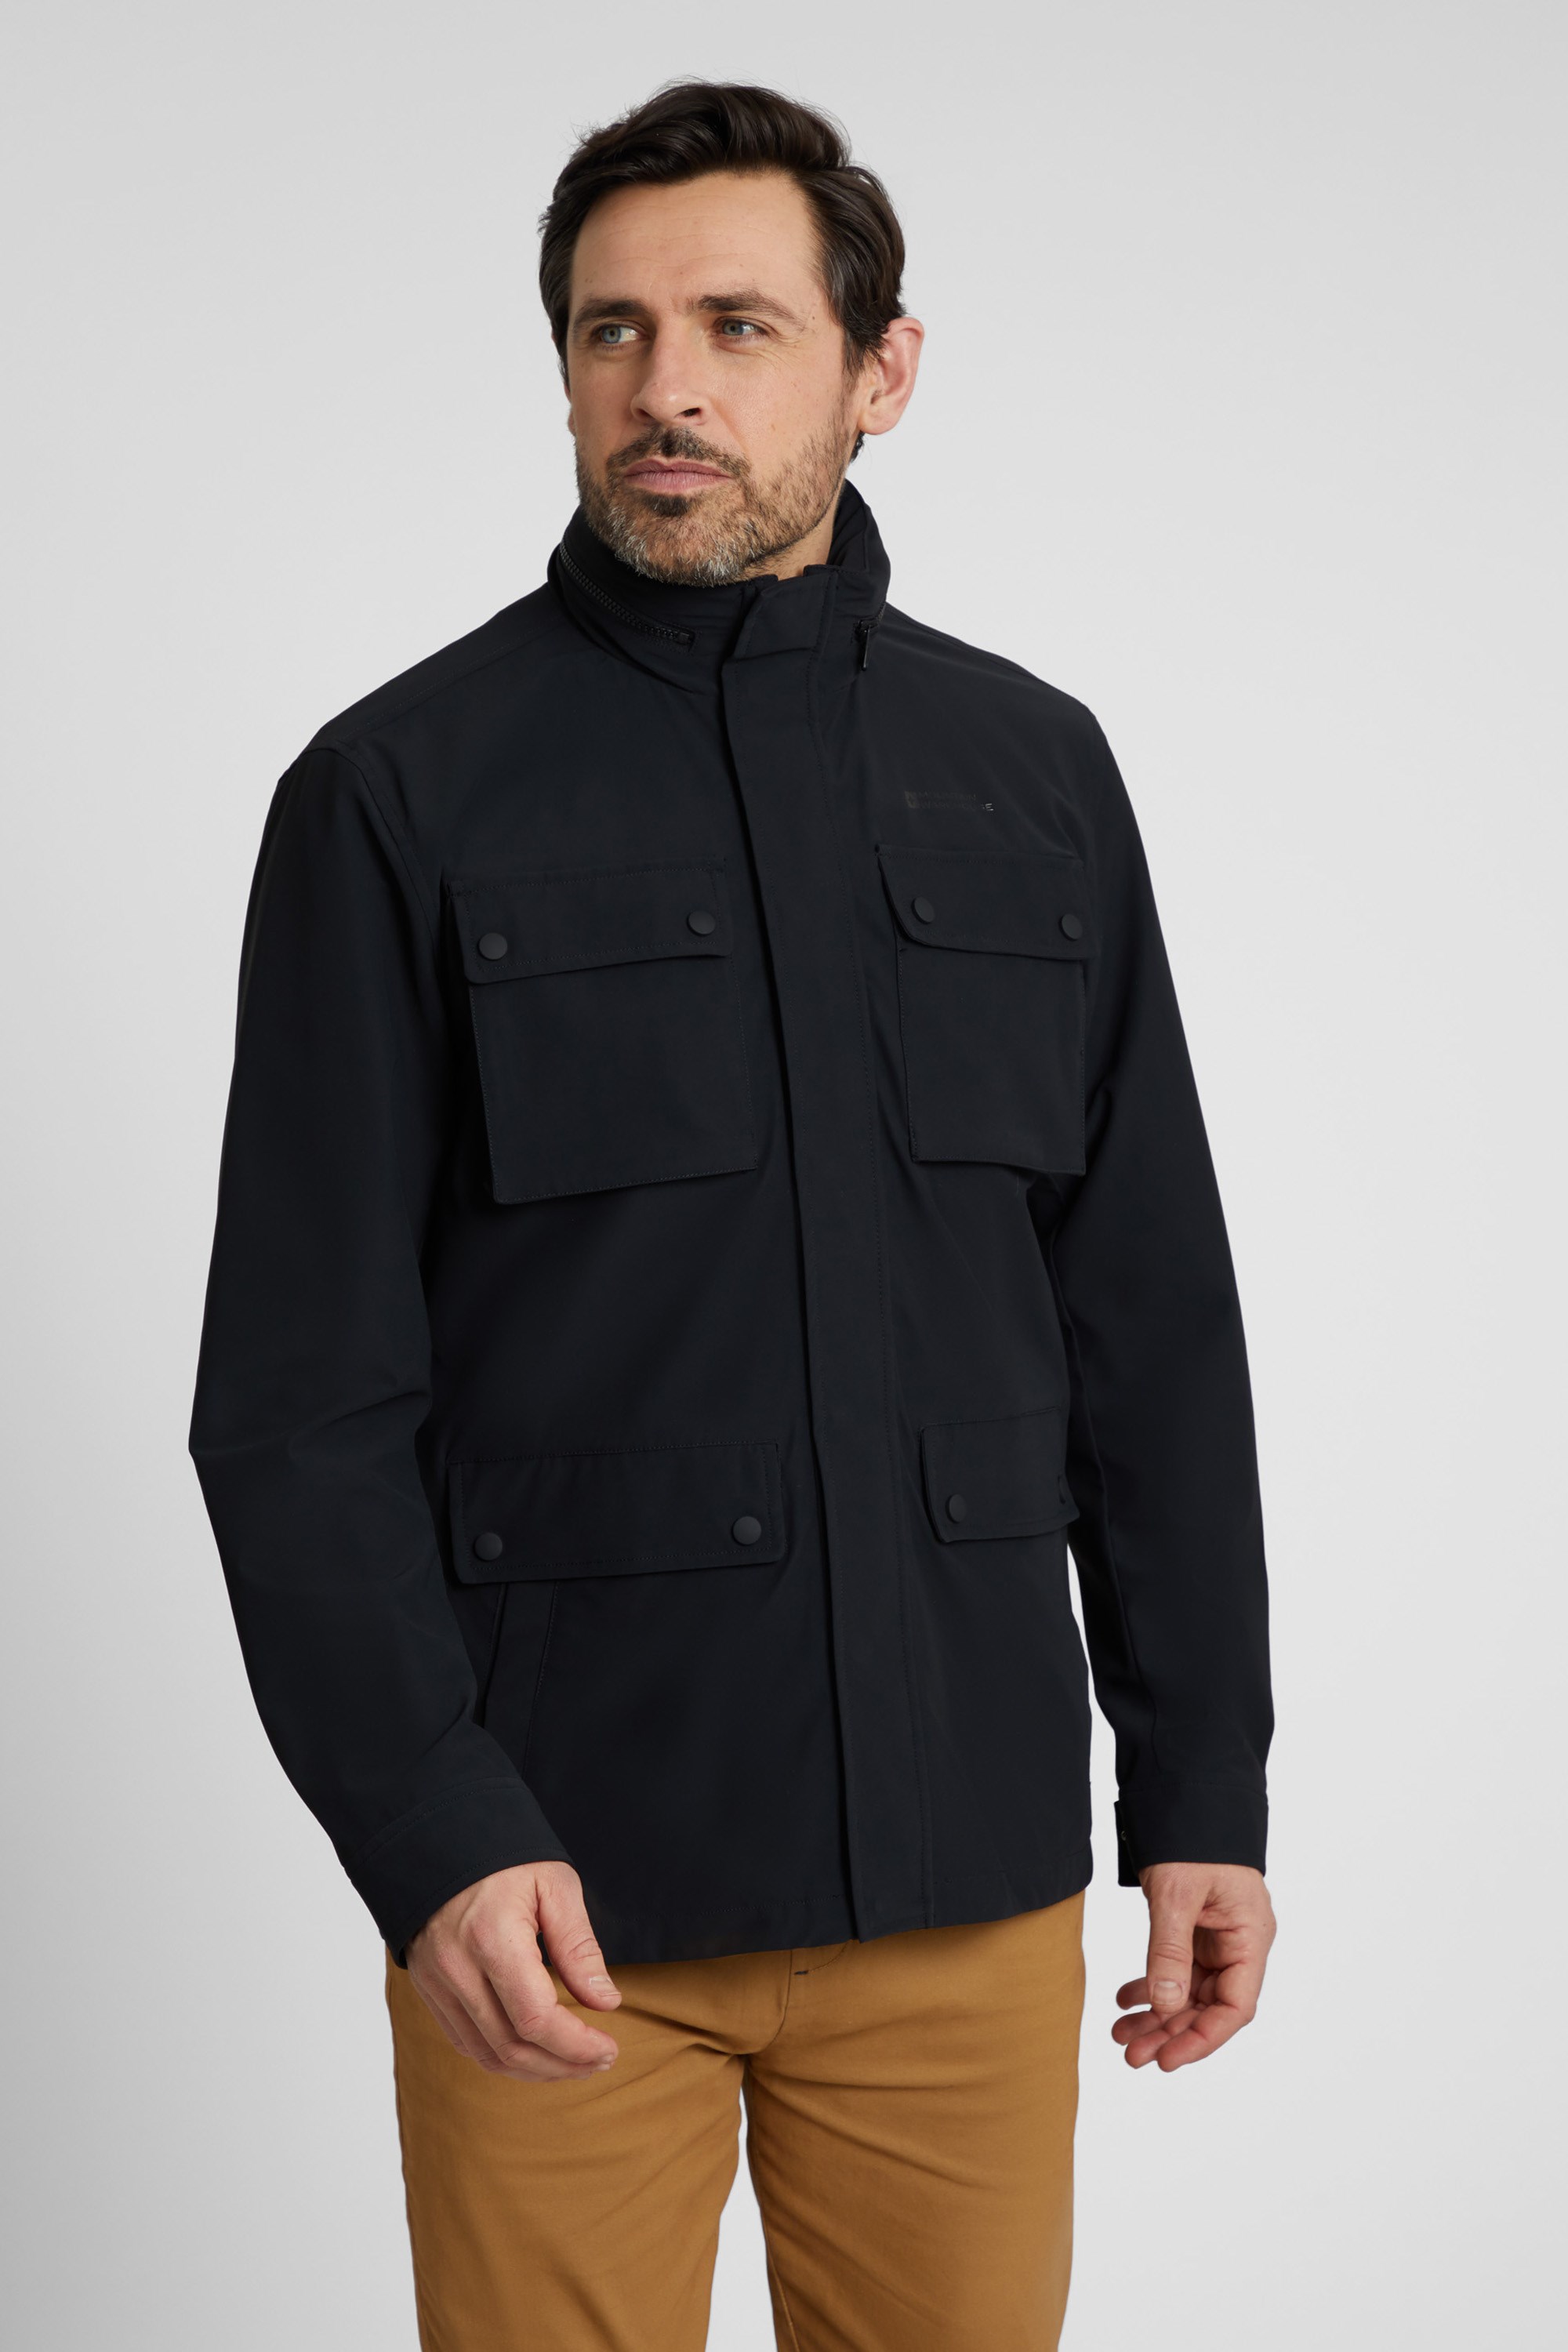 Dark Reflective Tactical Functional Cargo Jackets Coats Men Techwear  Streetwear Pullover Multi-pocket Hoody Casual Windbreaker - Jackets -  AliExpress